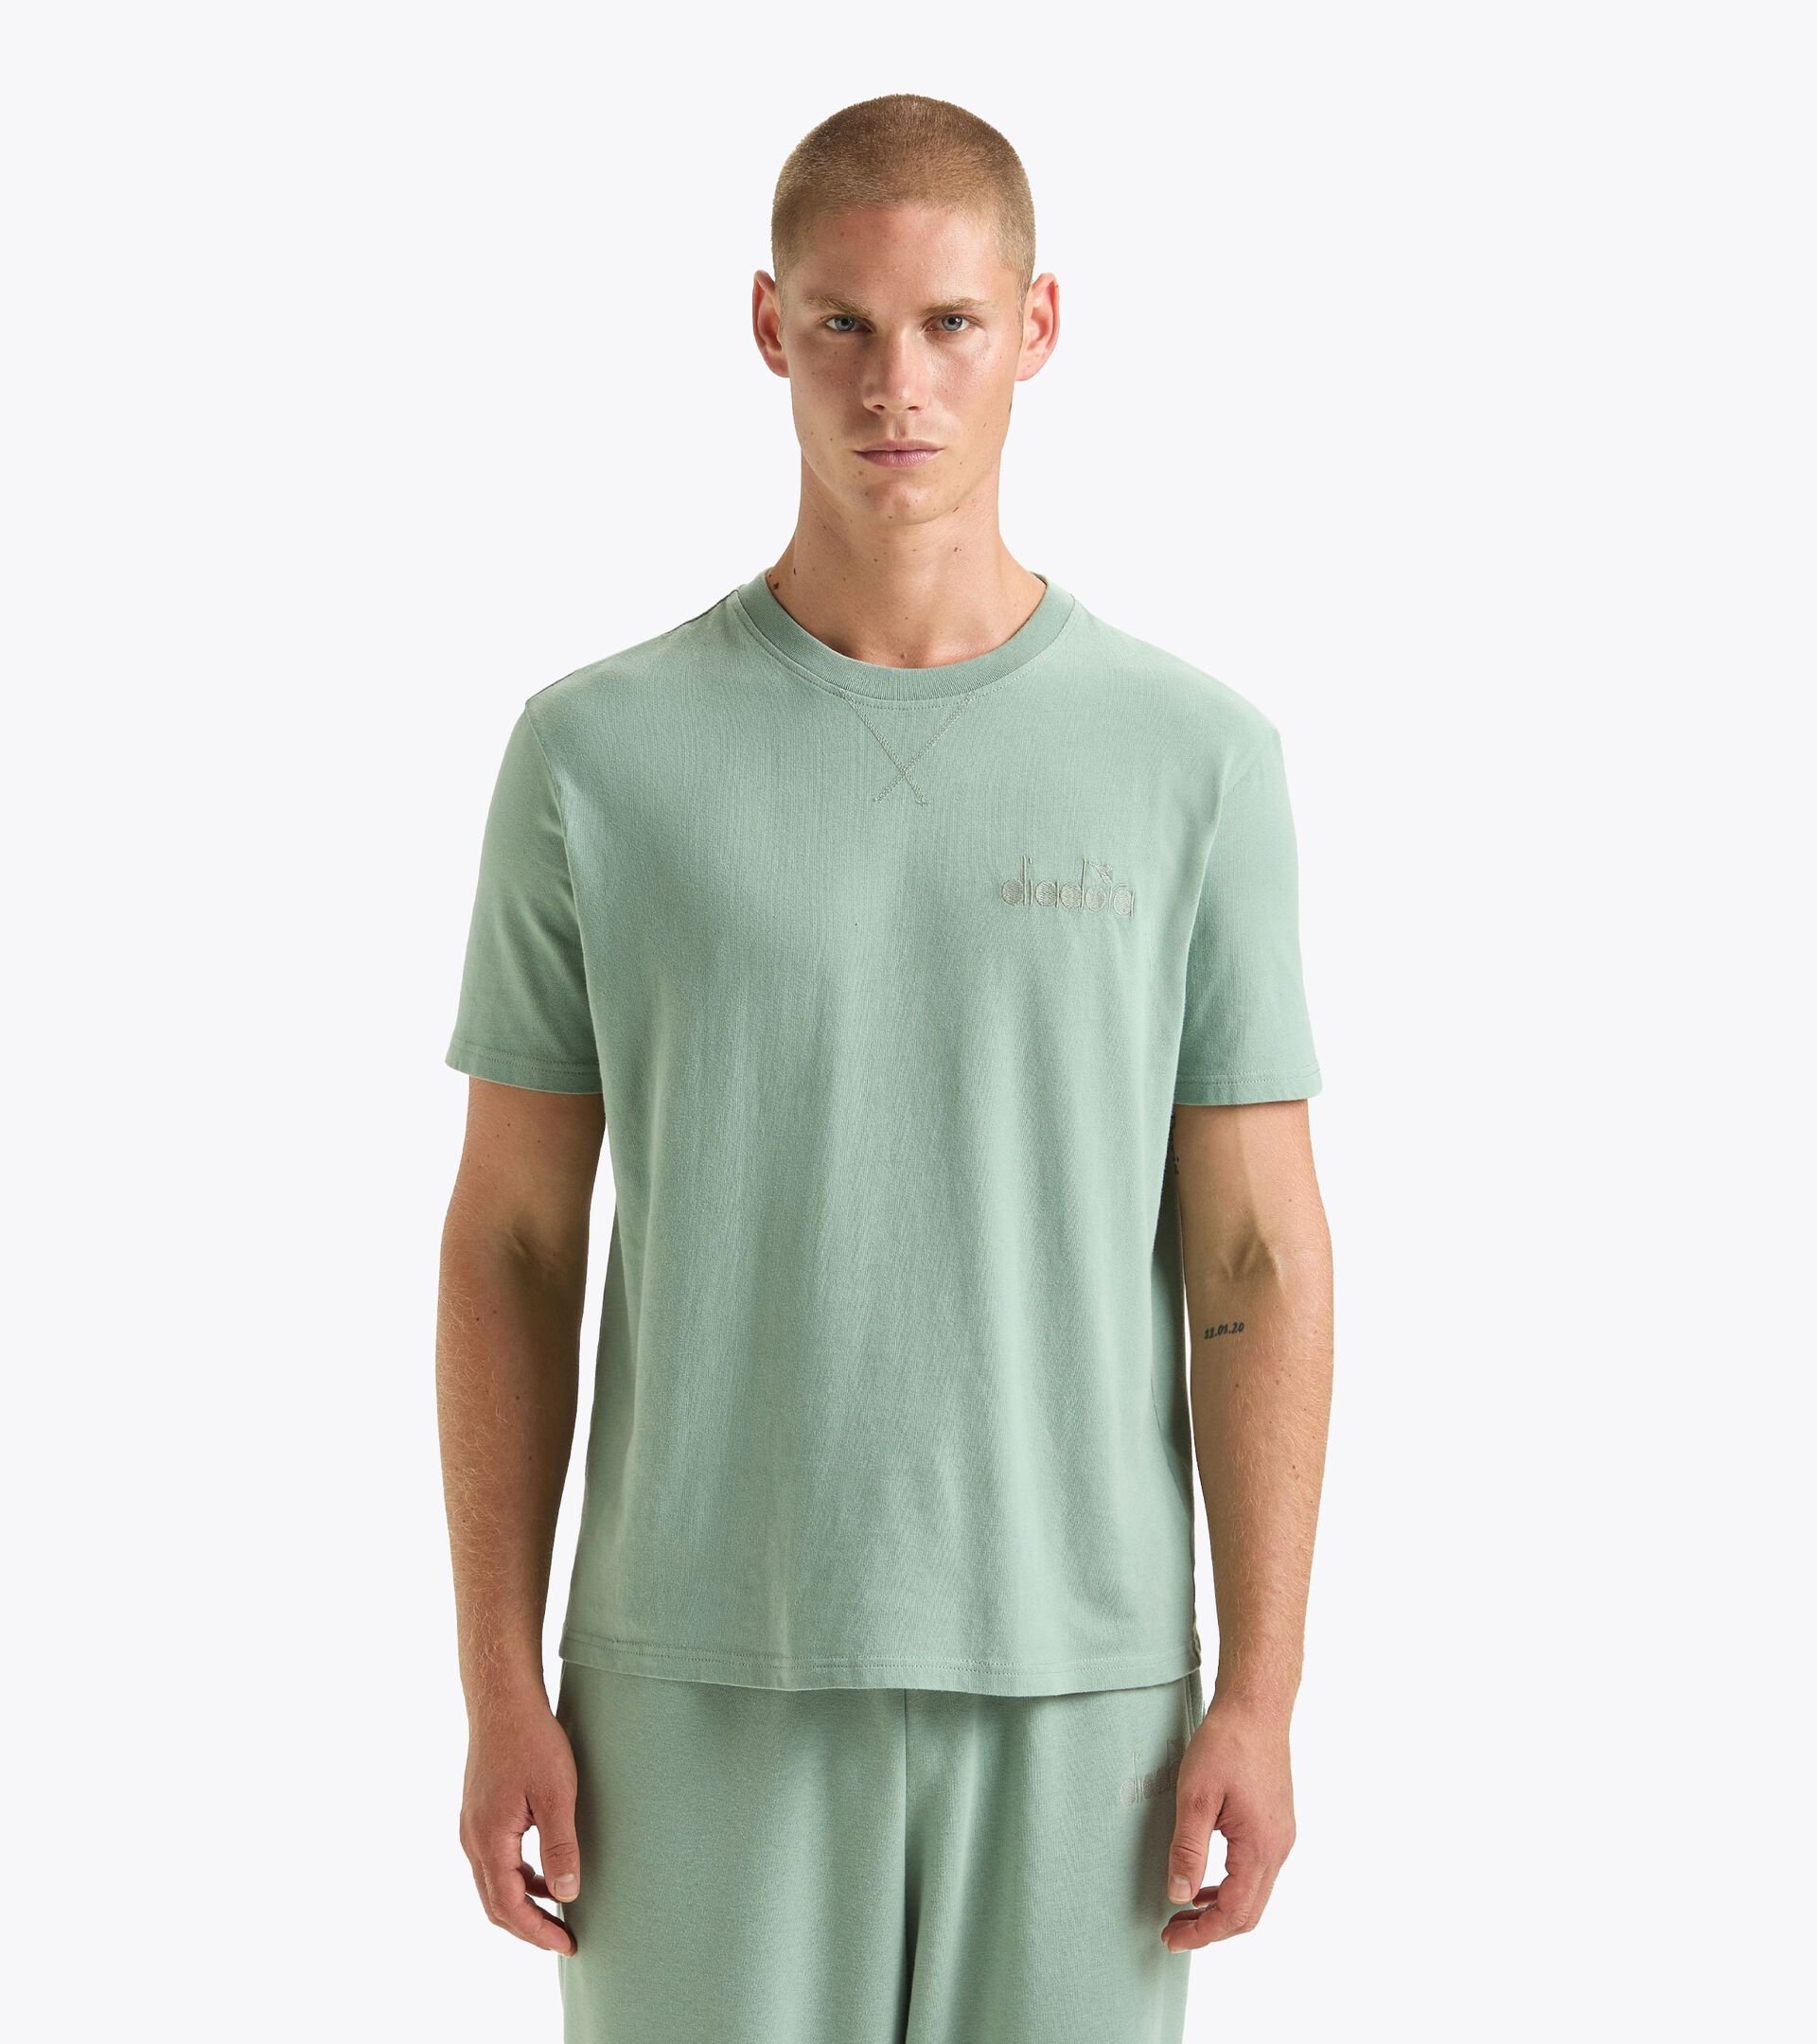 T-Shirt - Gender Neutral T-SHIRT SS ATHL. LOGO EISBERG GRUEN - Diadora